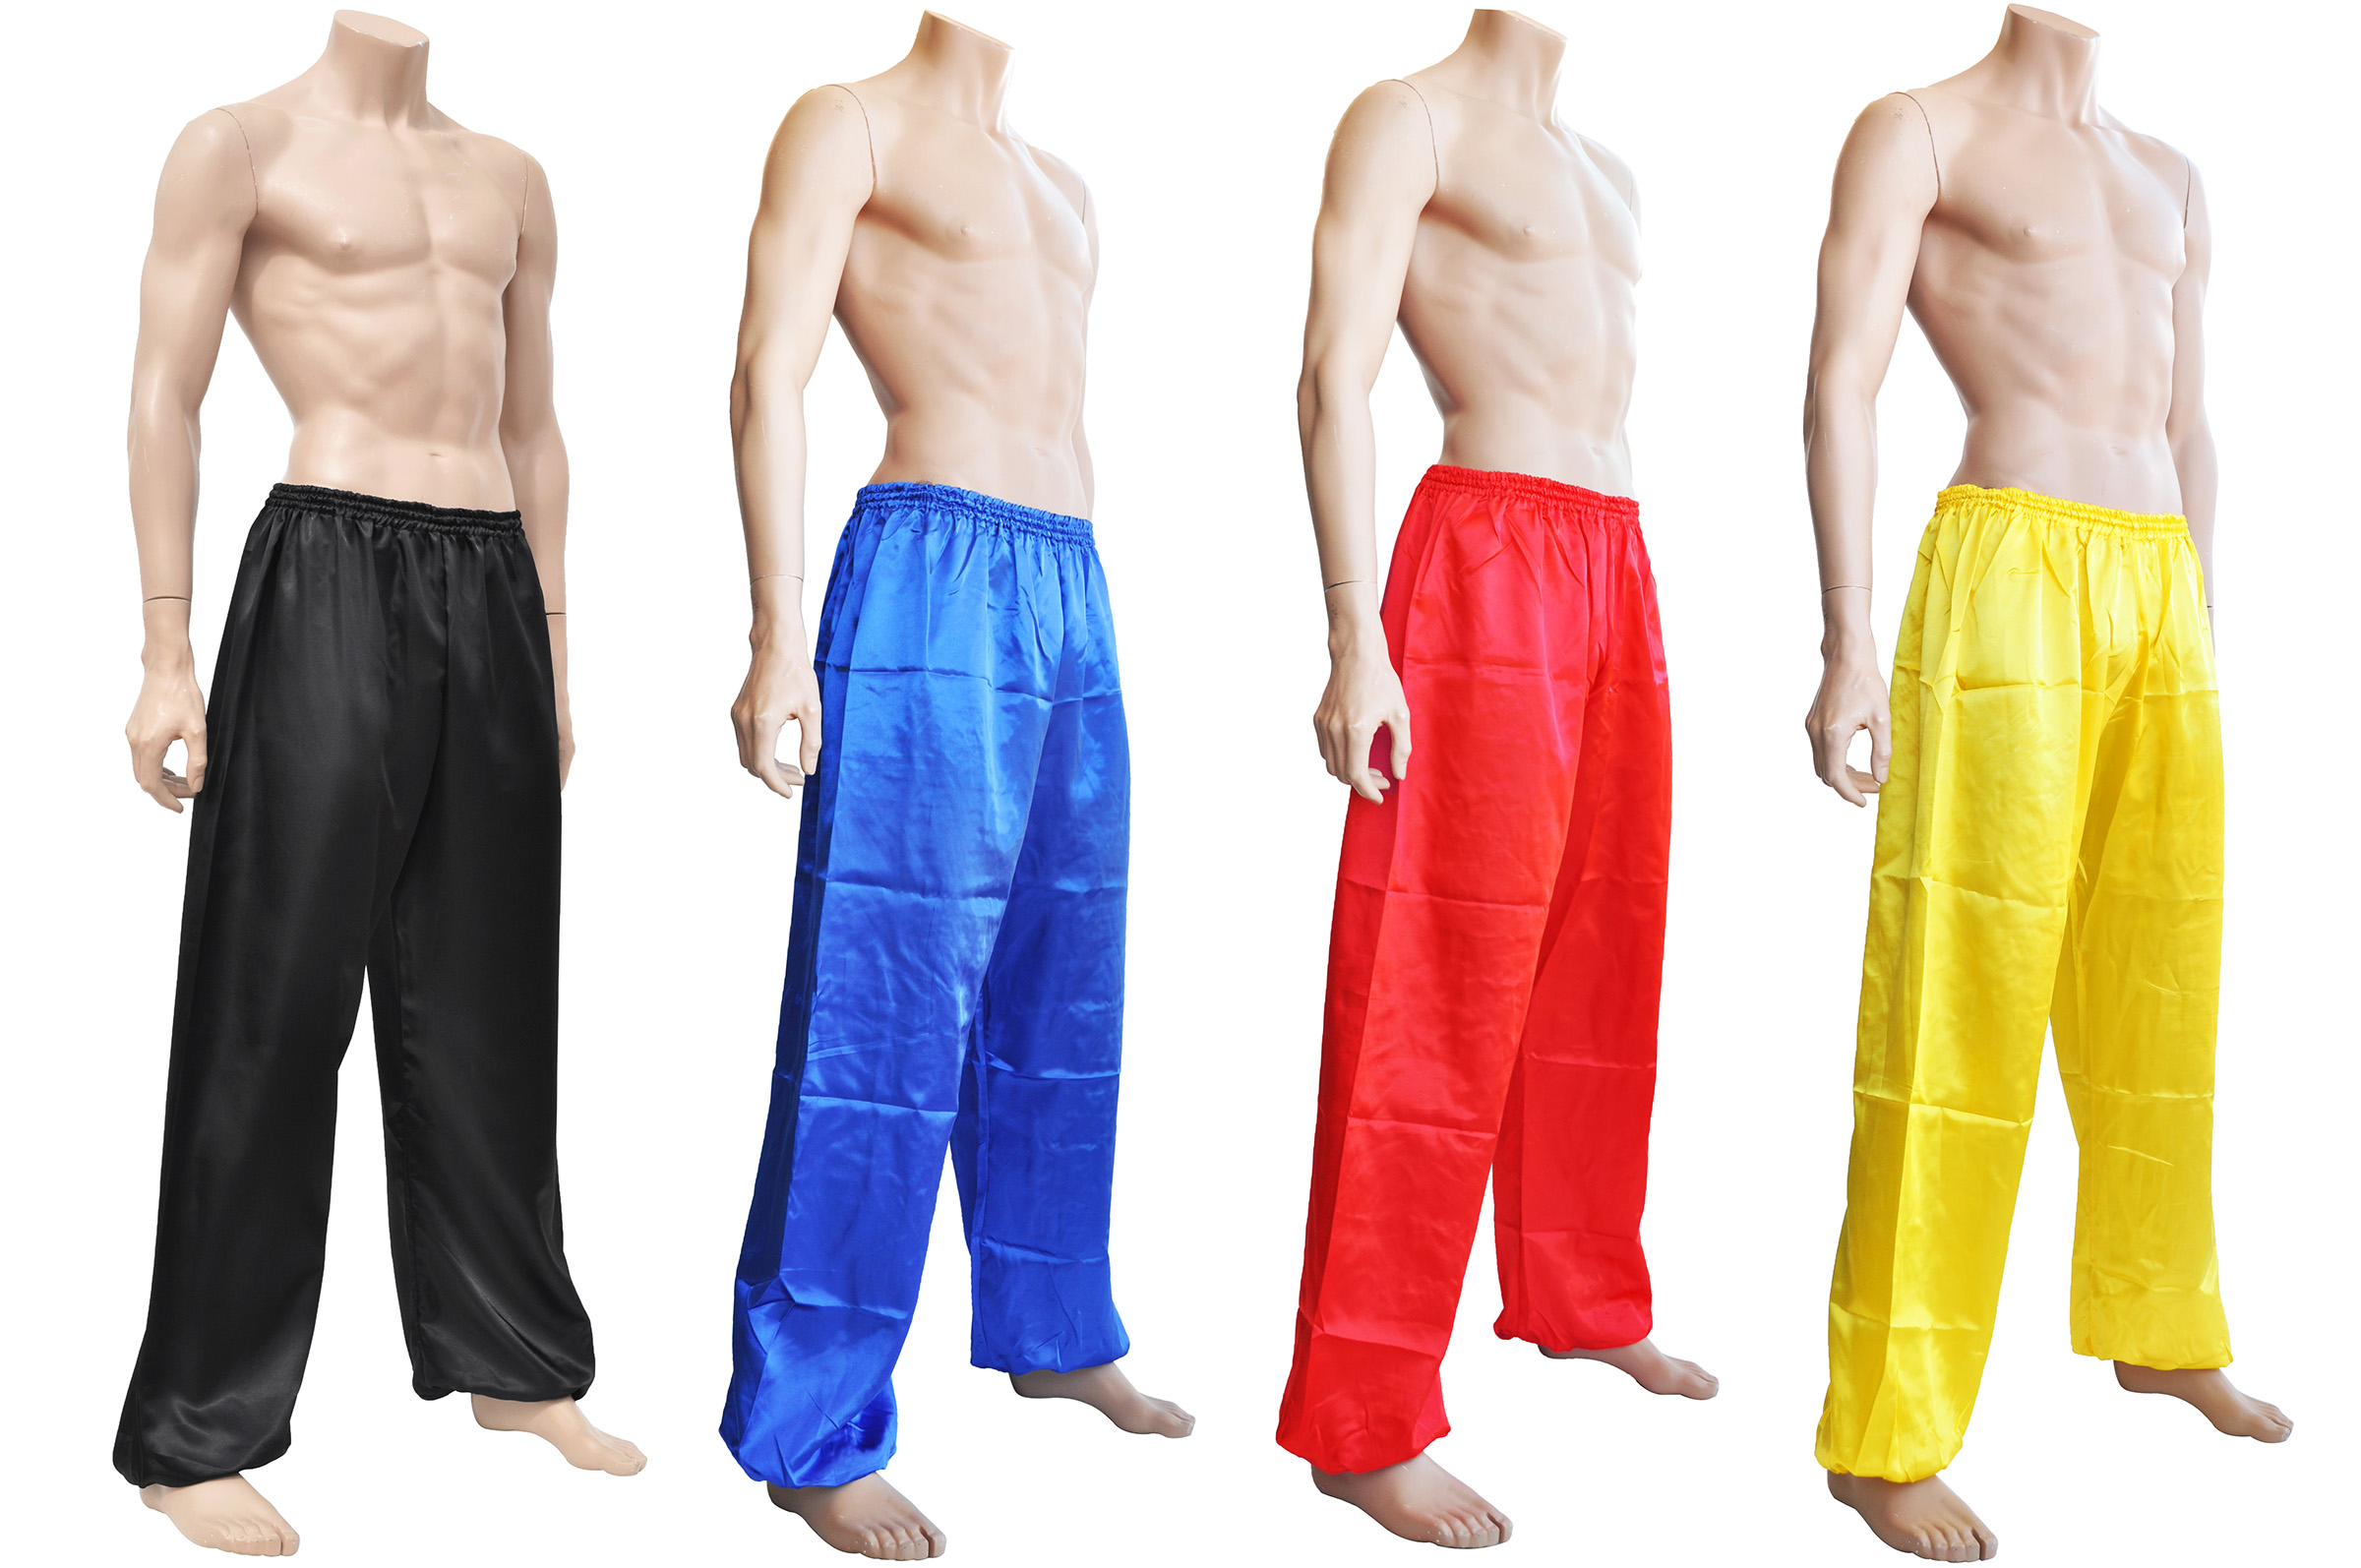 Summer Cotton Kung fu Tai chi Pants Martial arts Shaolin Wing Chun Trousers  - Walmart.com